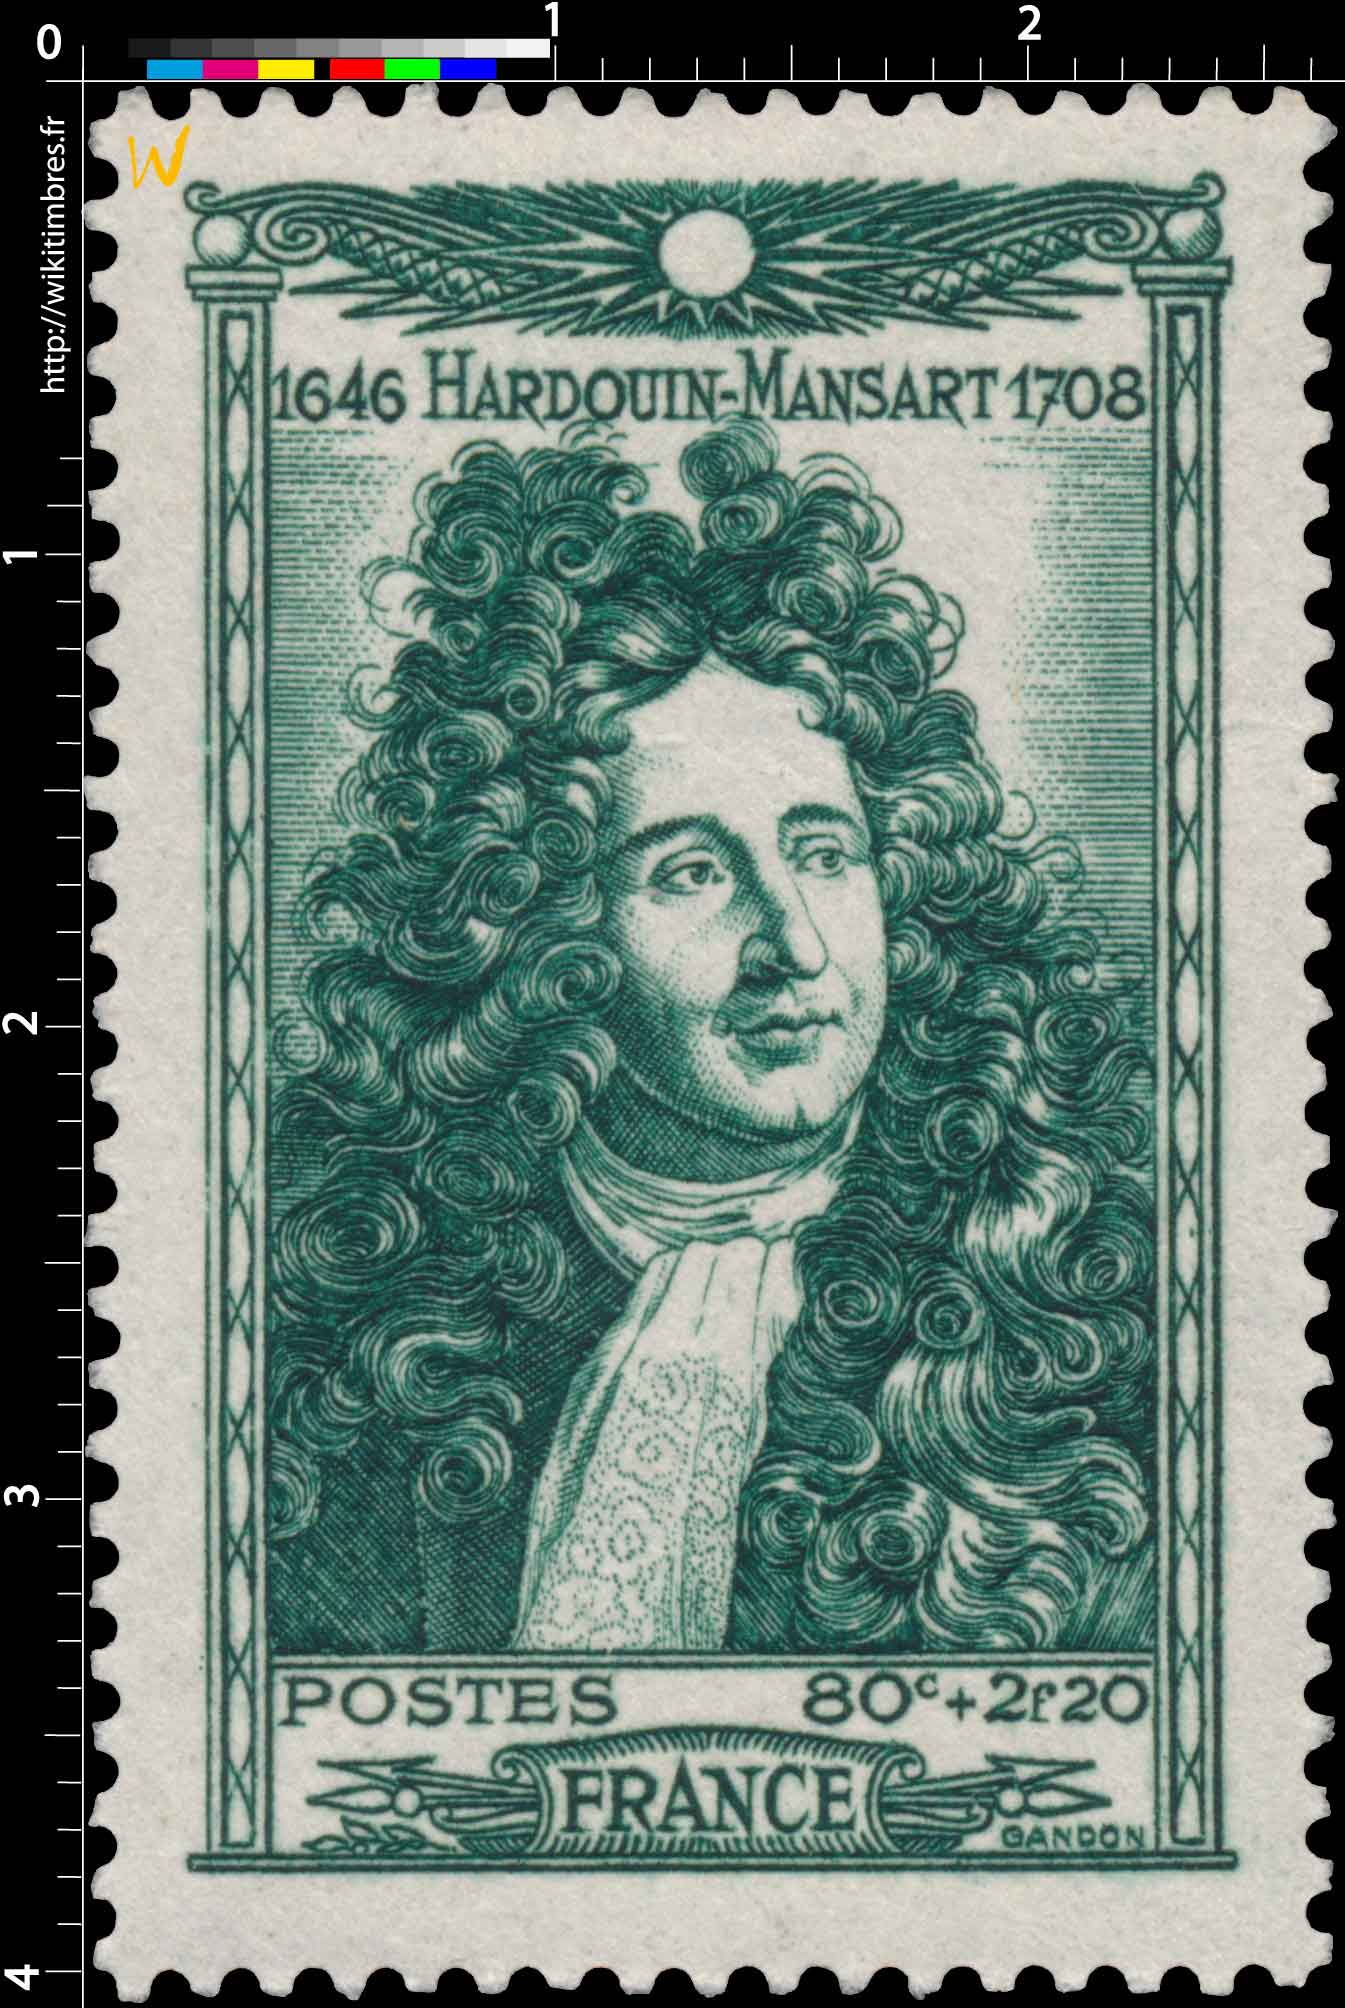 HARDOUIN-MANSART 1646-1708